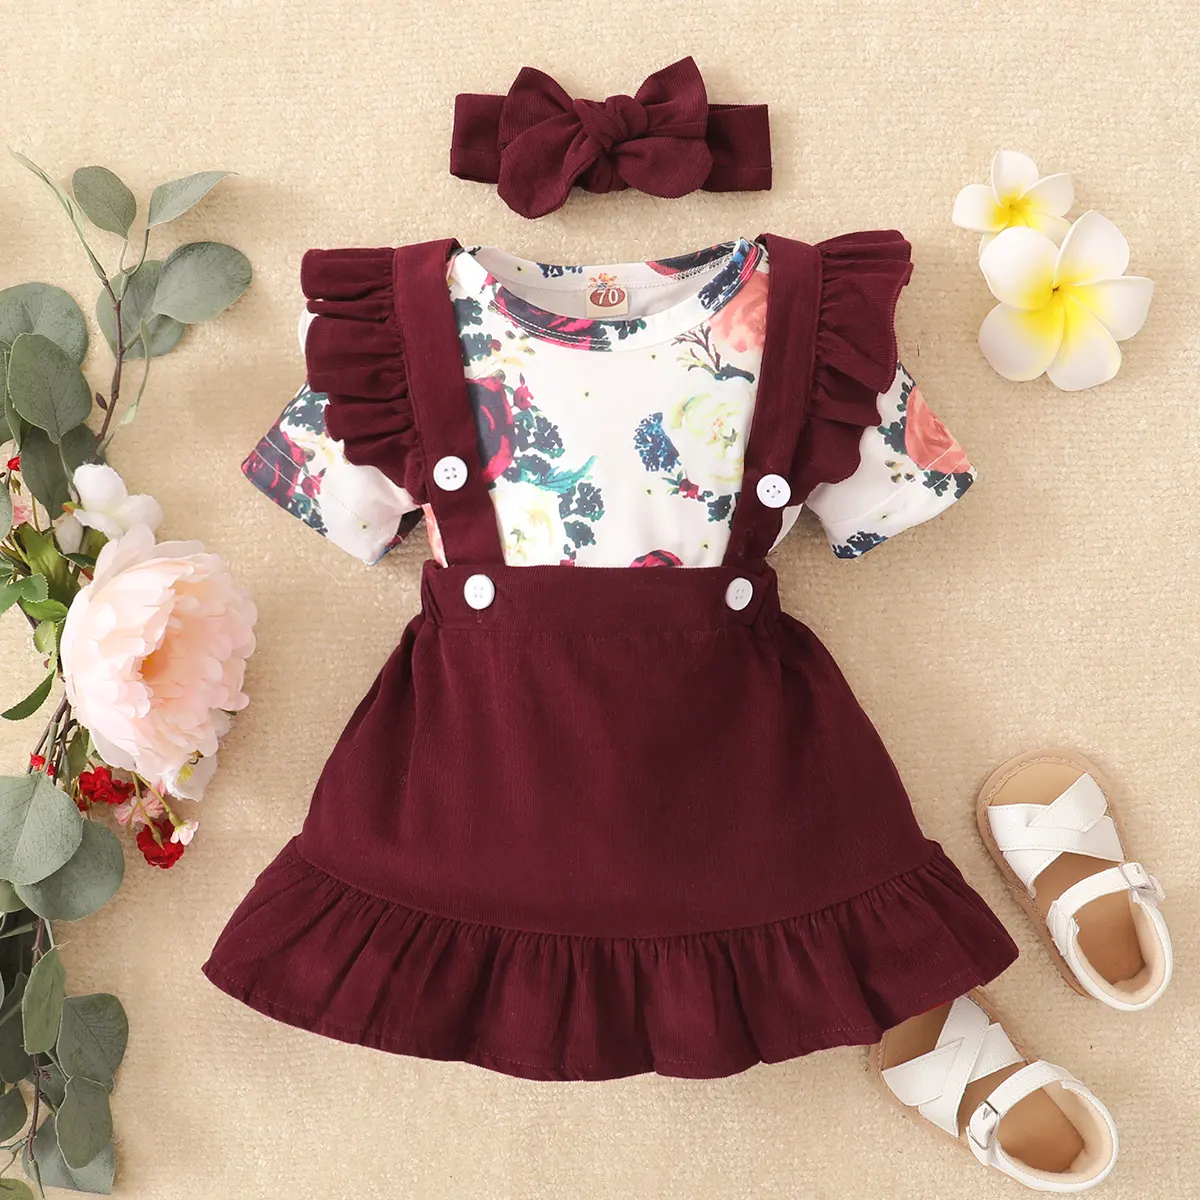 Großhandel Samt velour Baumwolle-Set Baby Mädchen modische Kleidung Babykleidung Neugeborene Mädchen Babykleider